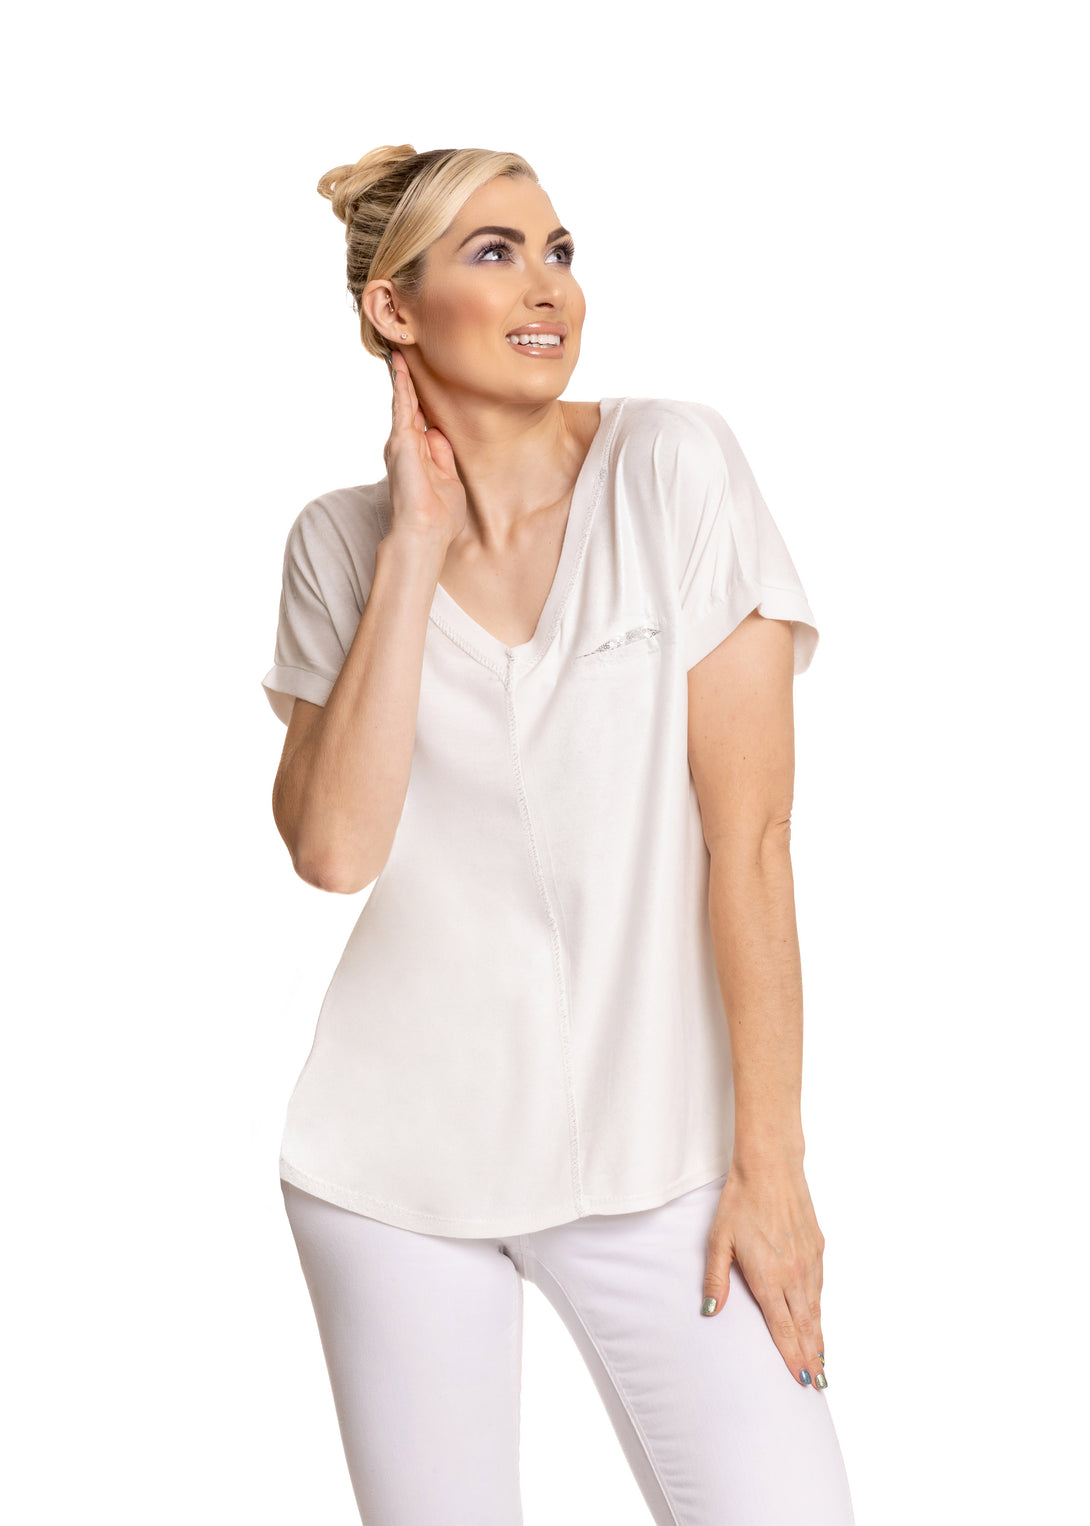 Oaklee Top in White - Imagine Fashion